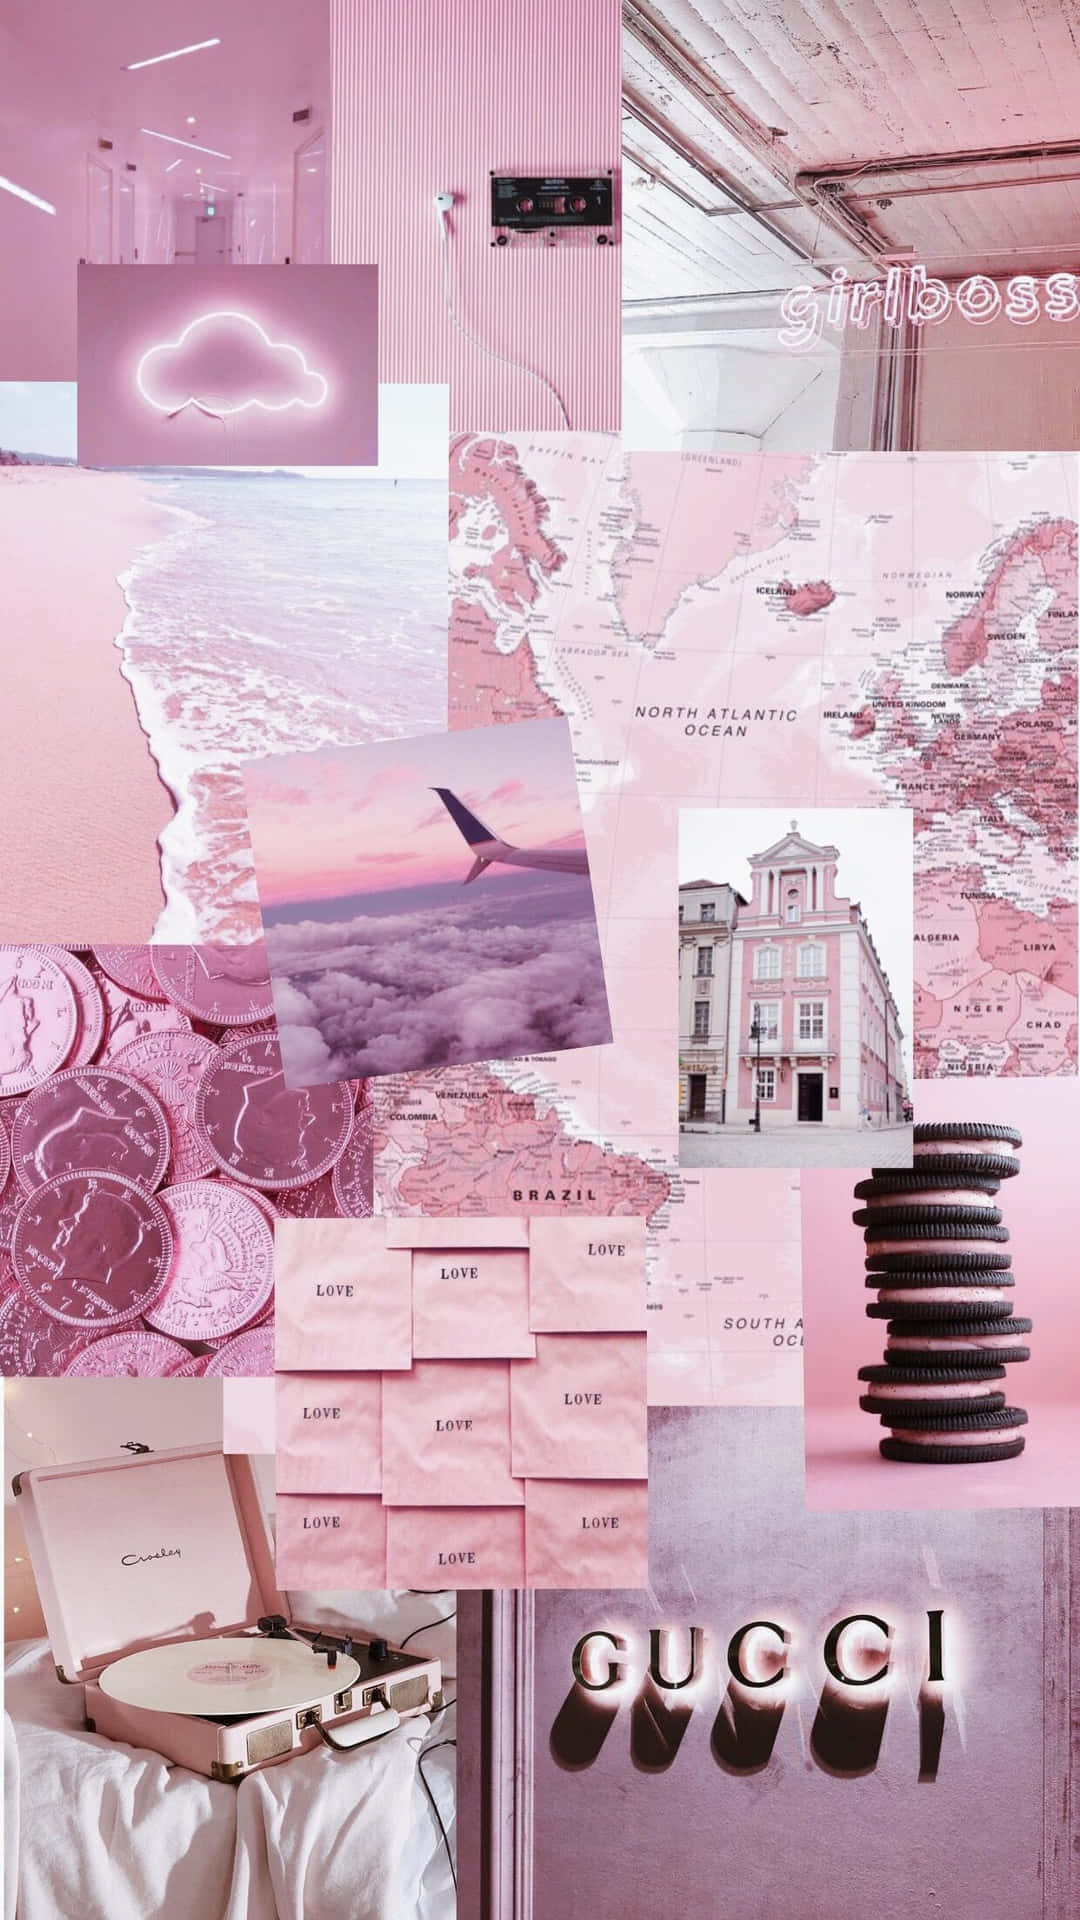 Những Pink Aesthetic Tumblr Backgrounds với những tông màu hồng tươi sáng và chủ đề độc đáo sẽ cung cấp cho bạn sự bao trọn, tình yêu và sự lãng mạn pha trộn cùng nhau để tạo thành những bức tranh hoàn hảo. Click vào để xem những bức ảnh mà bạn sẽ không muốn bỏ lỡ!